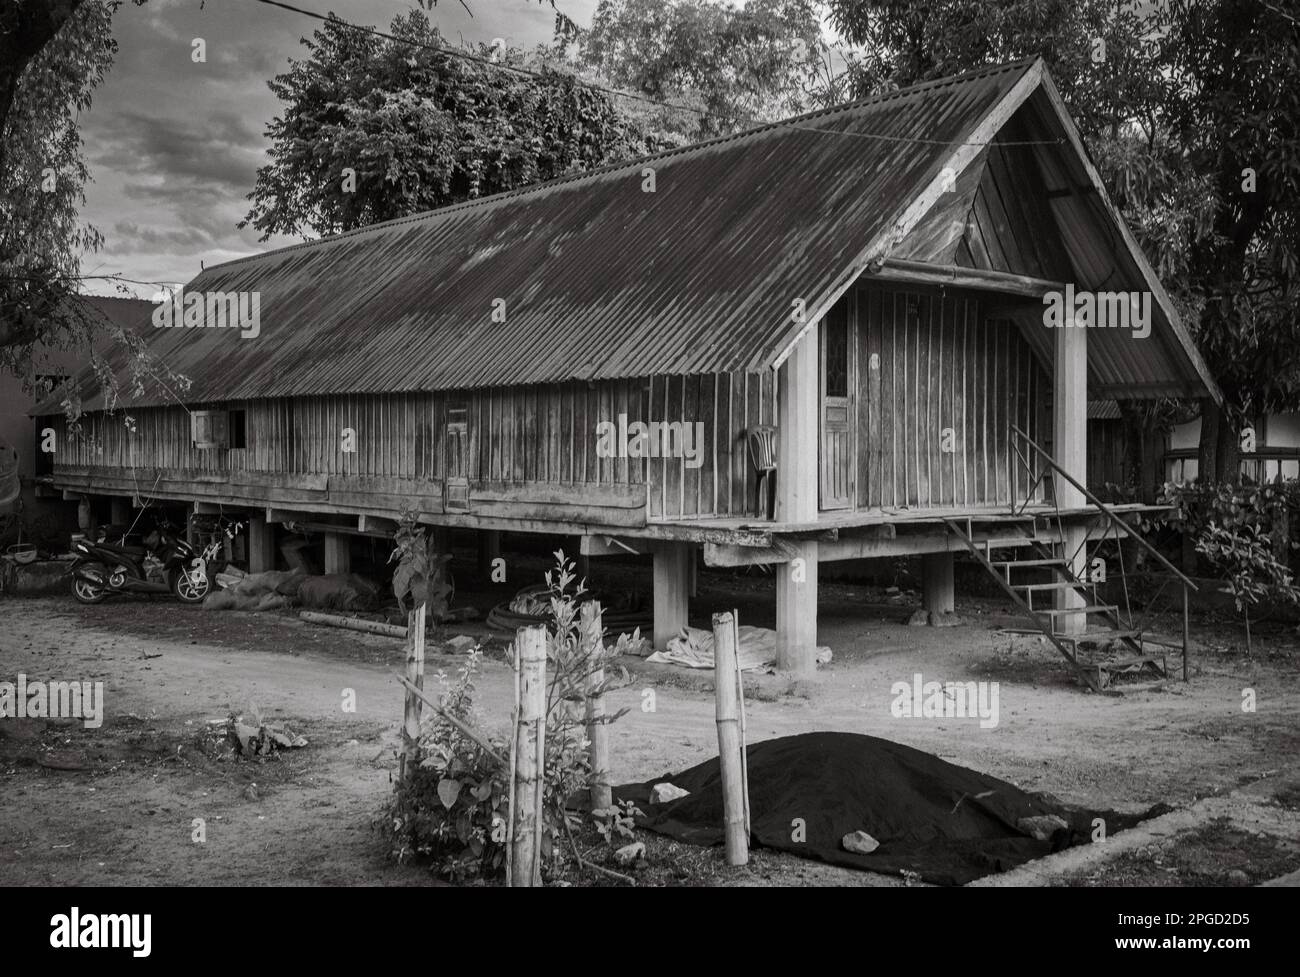 Ein traditionelles langes Holzhaus auf Pfählen gehört zur Familie der ethnischen Minderheit Mnong in Buon Jun, Lien Son, Vietnam. Stockfoto